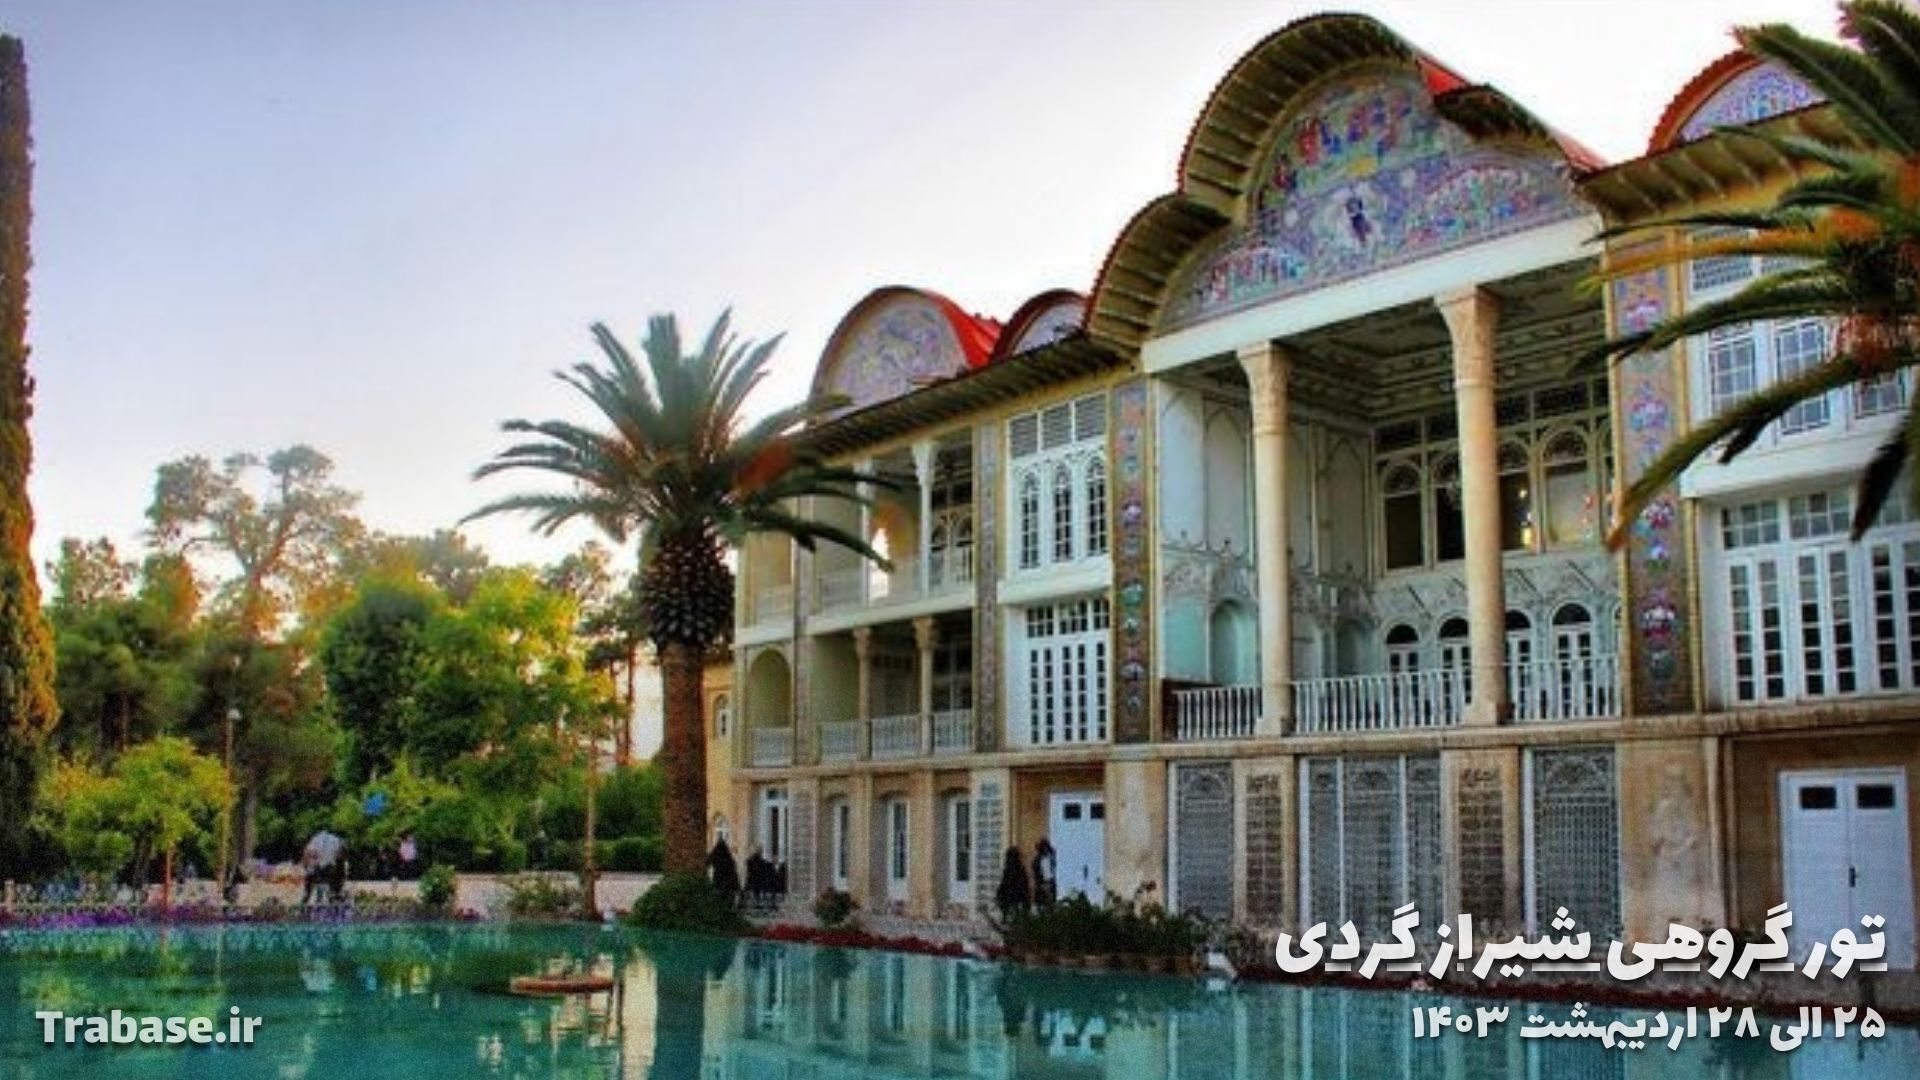 تور شیراز از اراک